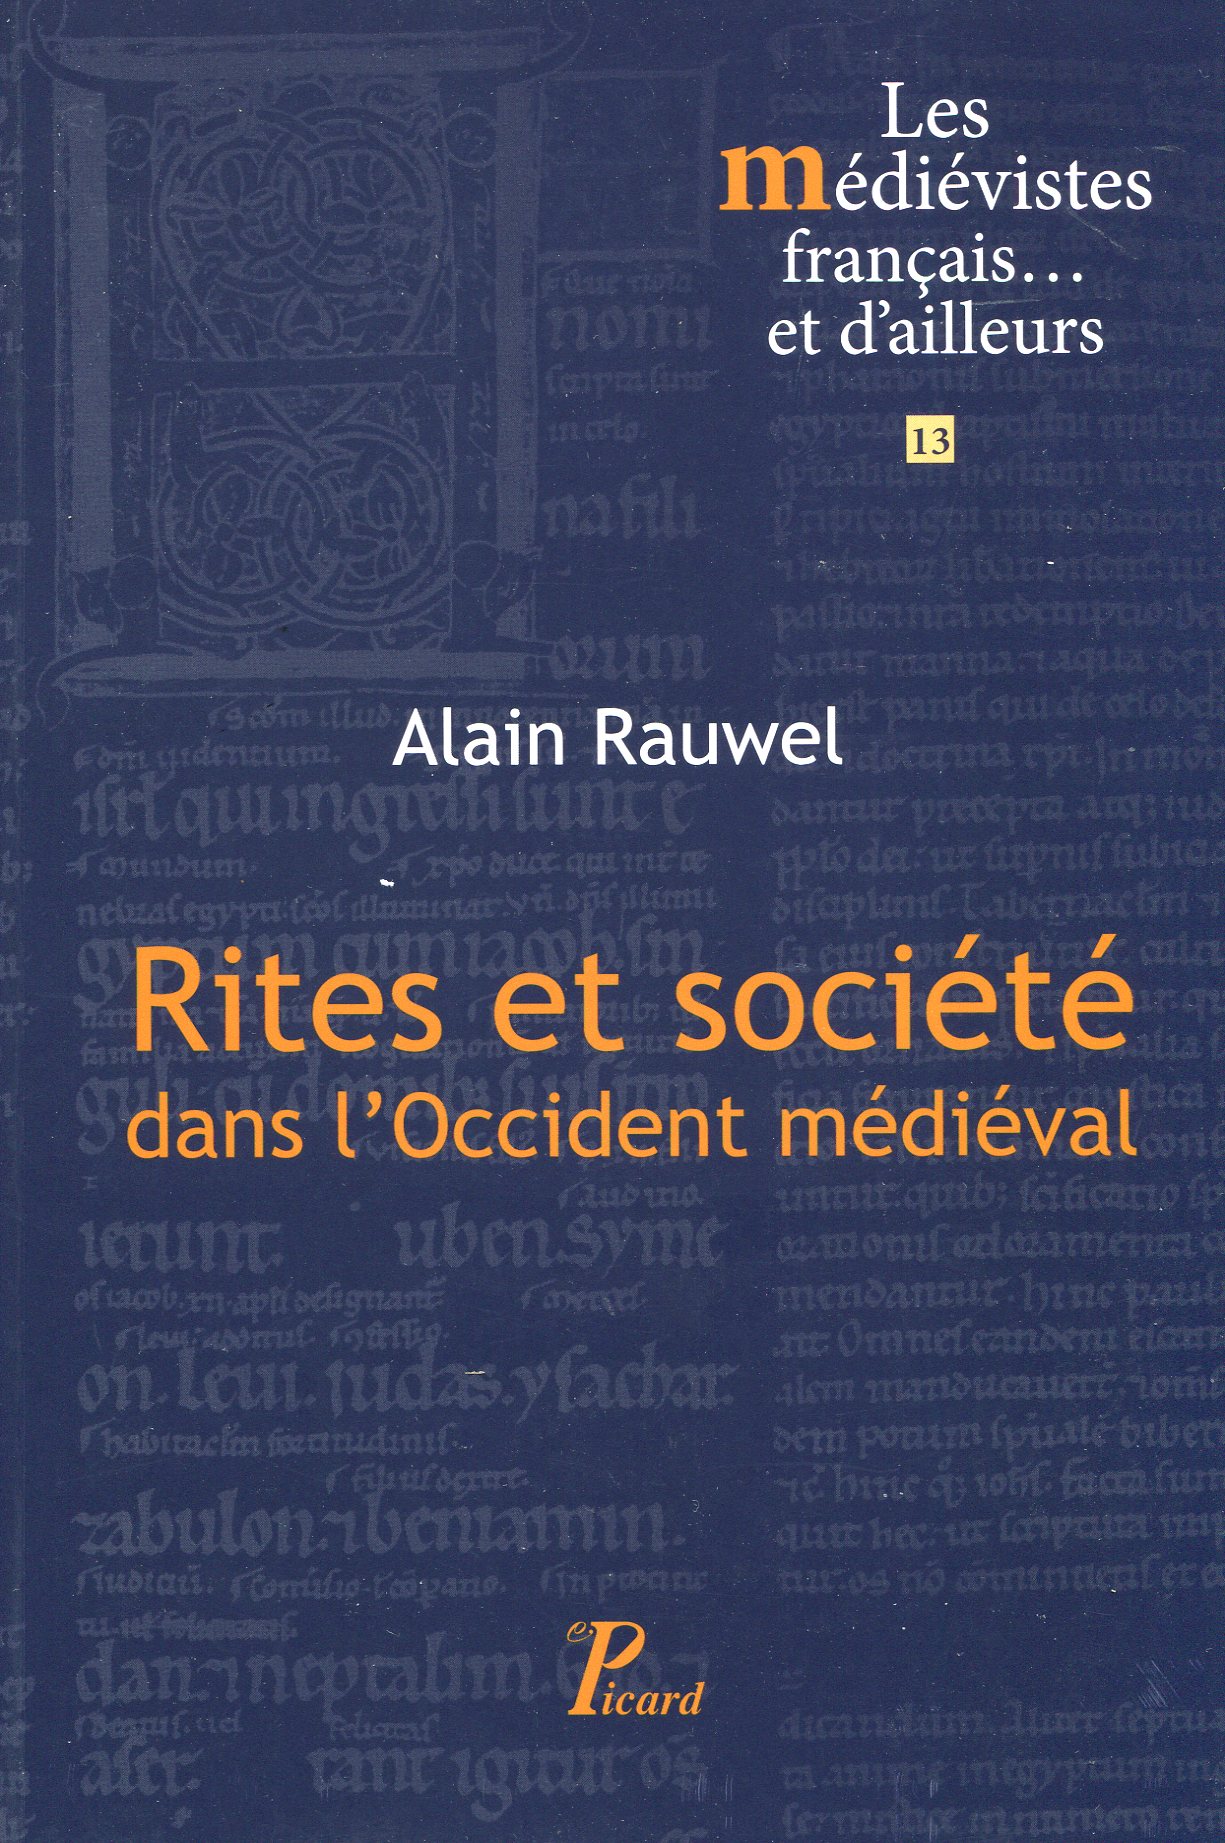 Rites et société dans l'Occident médiéval, 2016, 152 p.